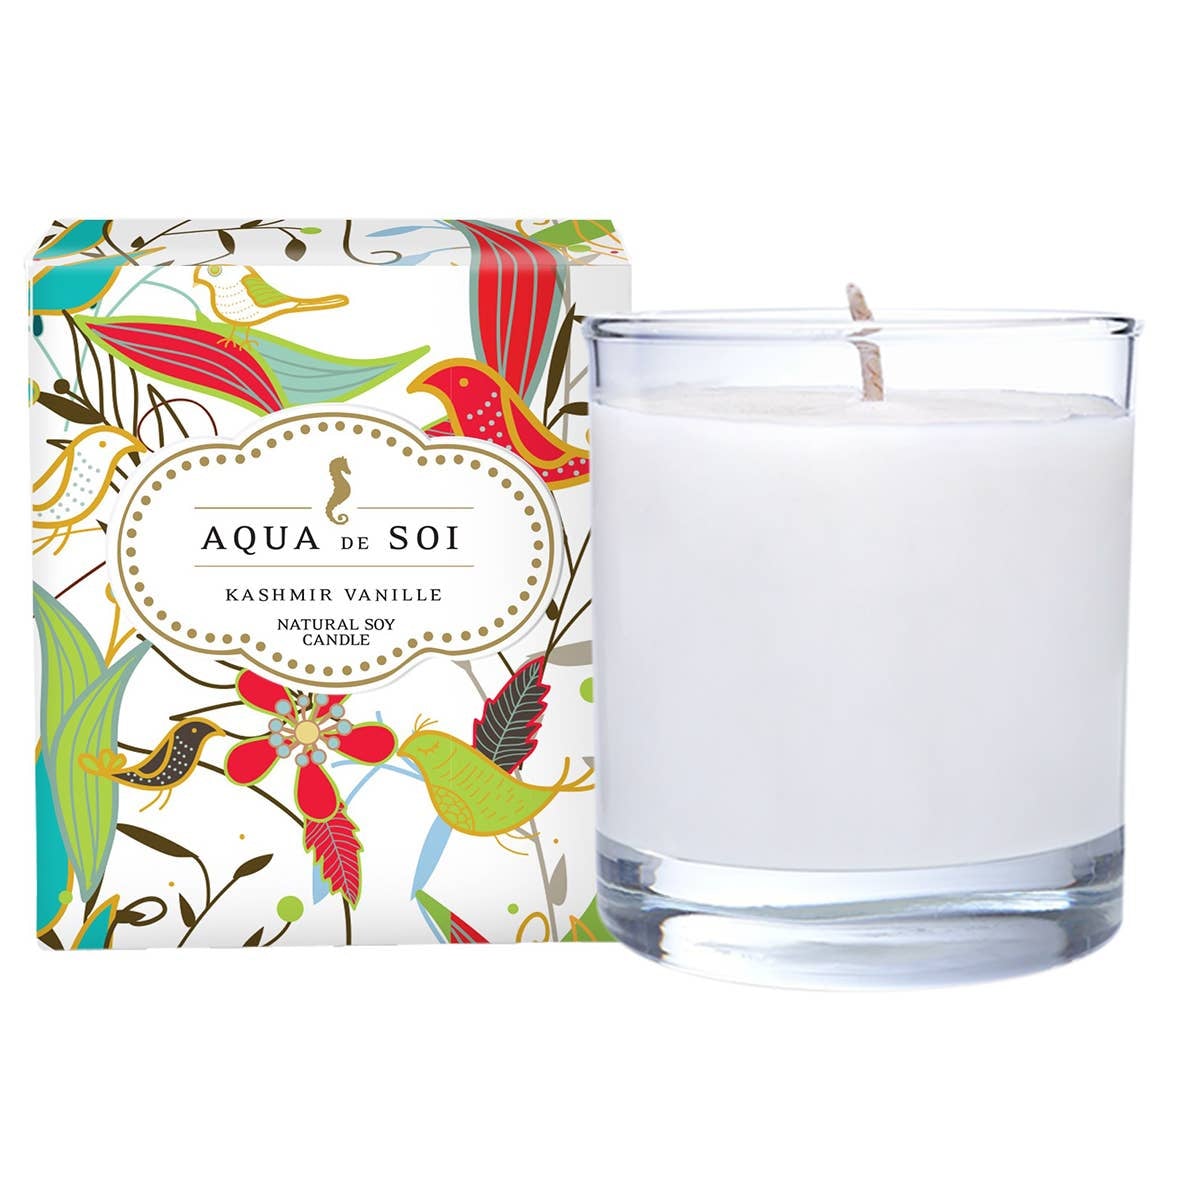 Aqua de Soi Kashmir Vanille Candle , 11 oz